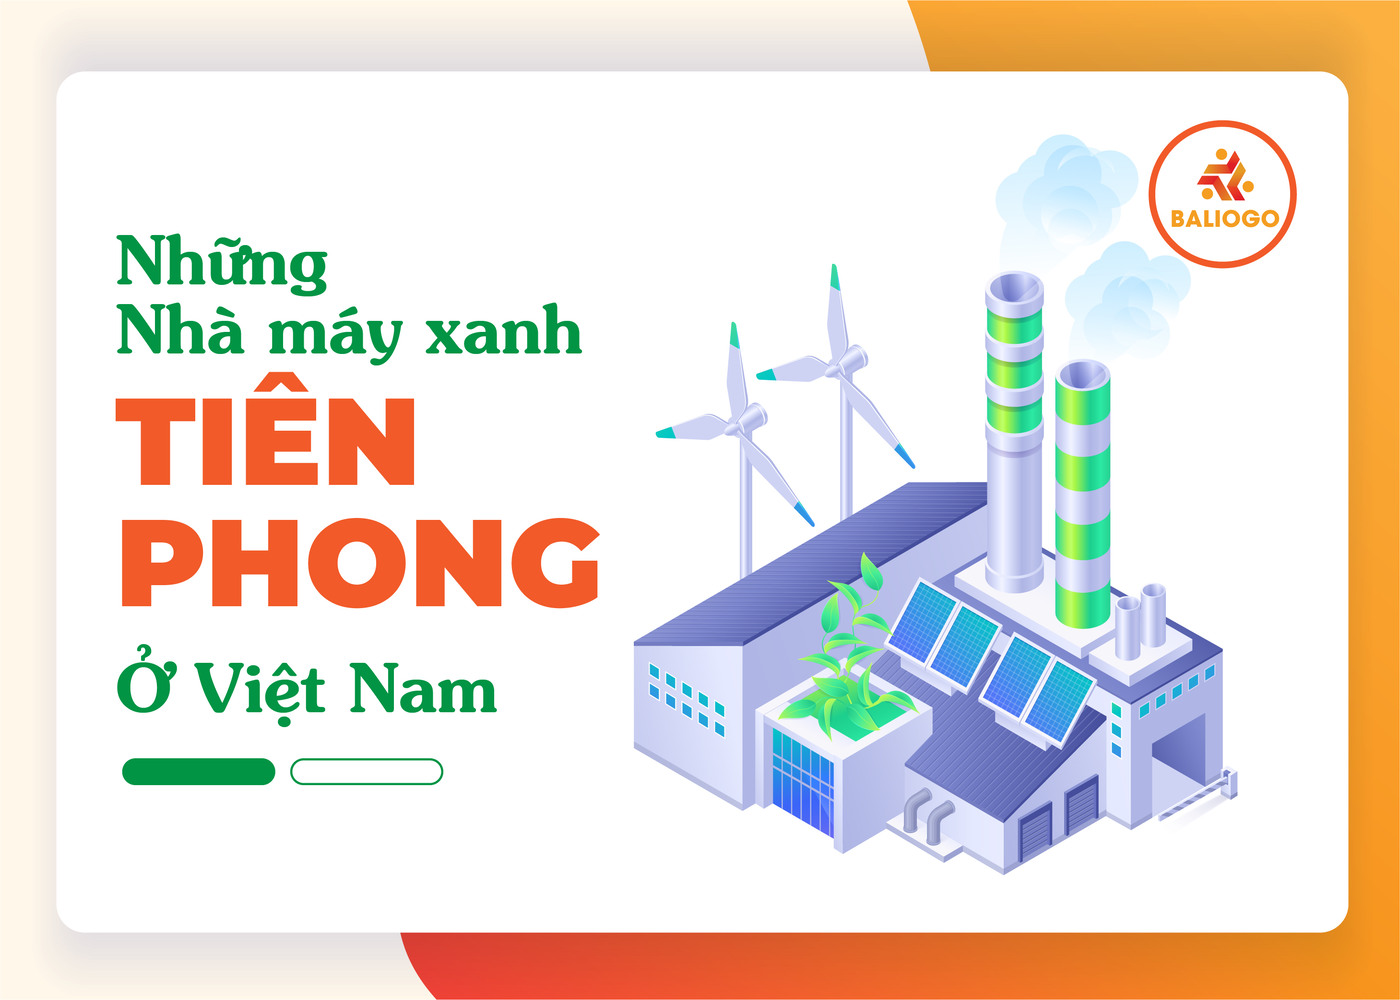 Những nhà máy xanh tiên phong ở Việt Nam